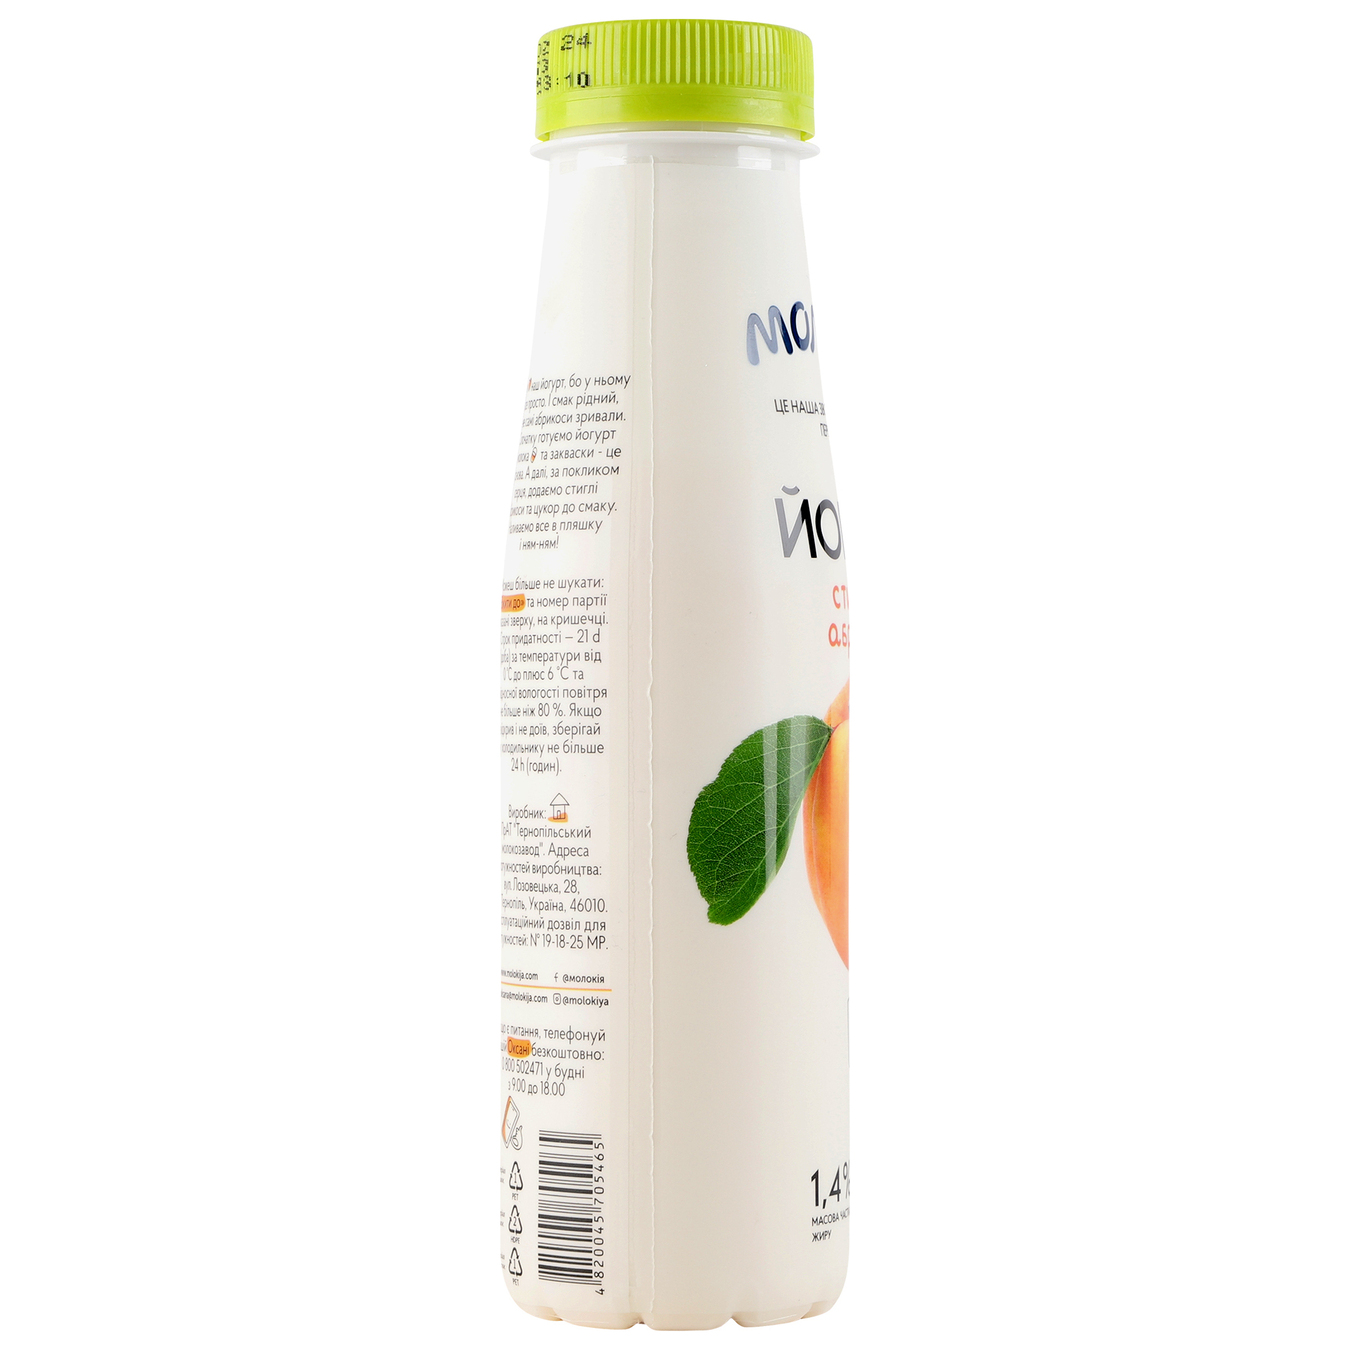 Йогурт Молокая абрикос бутылка 1,4% 250г 3